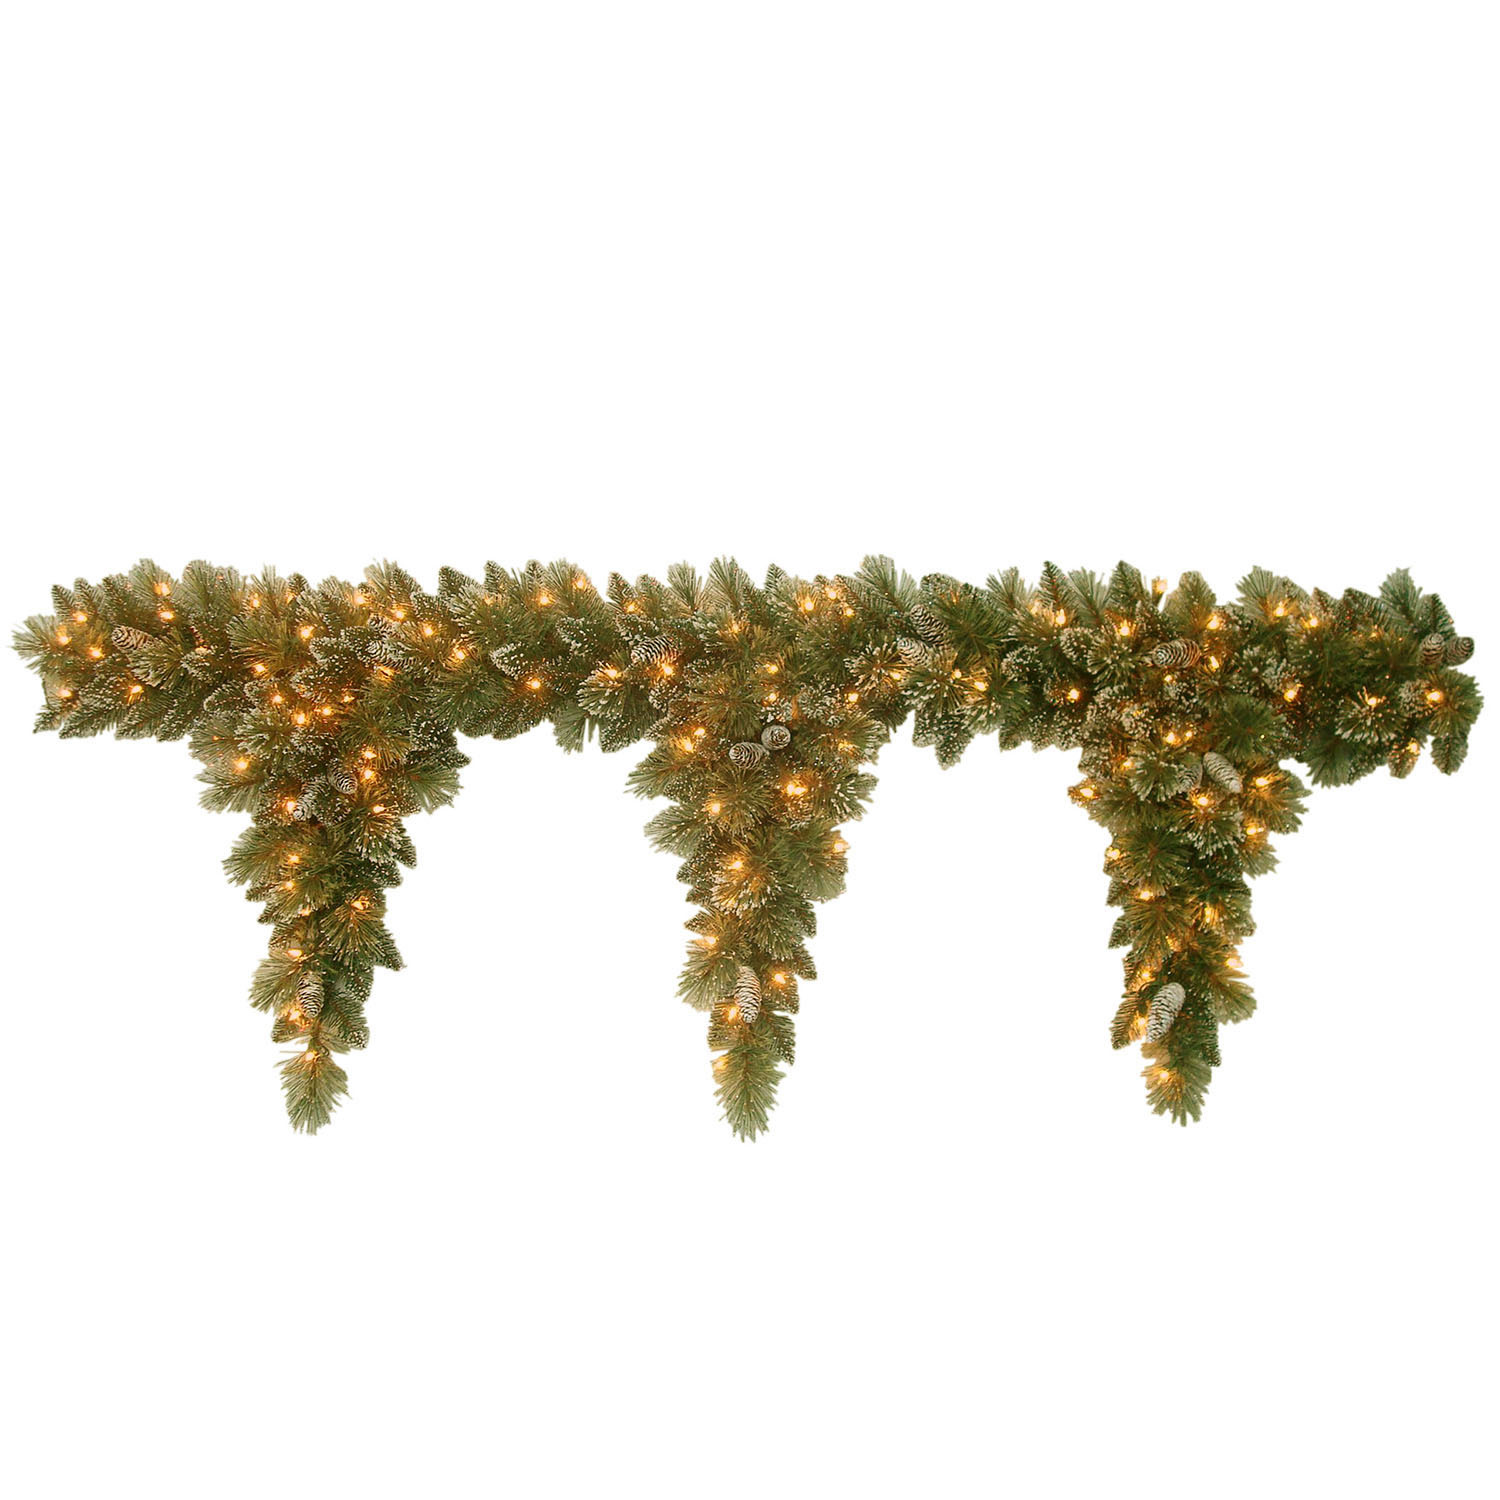 6 Foot Glittery Bristle Pine Mantel Swag: 3 Drops